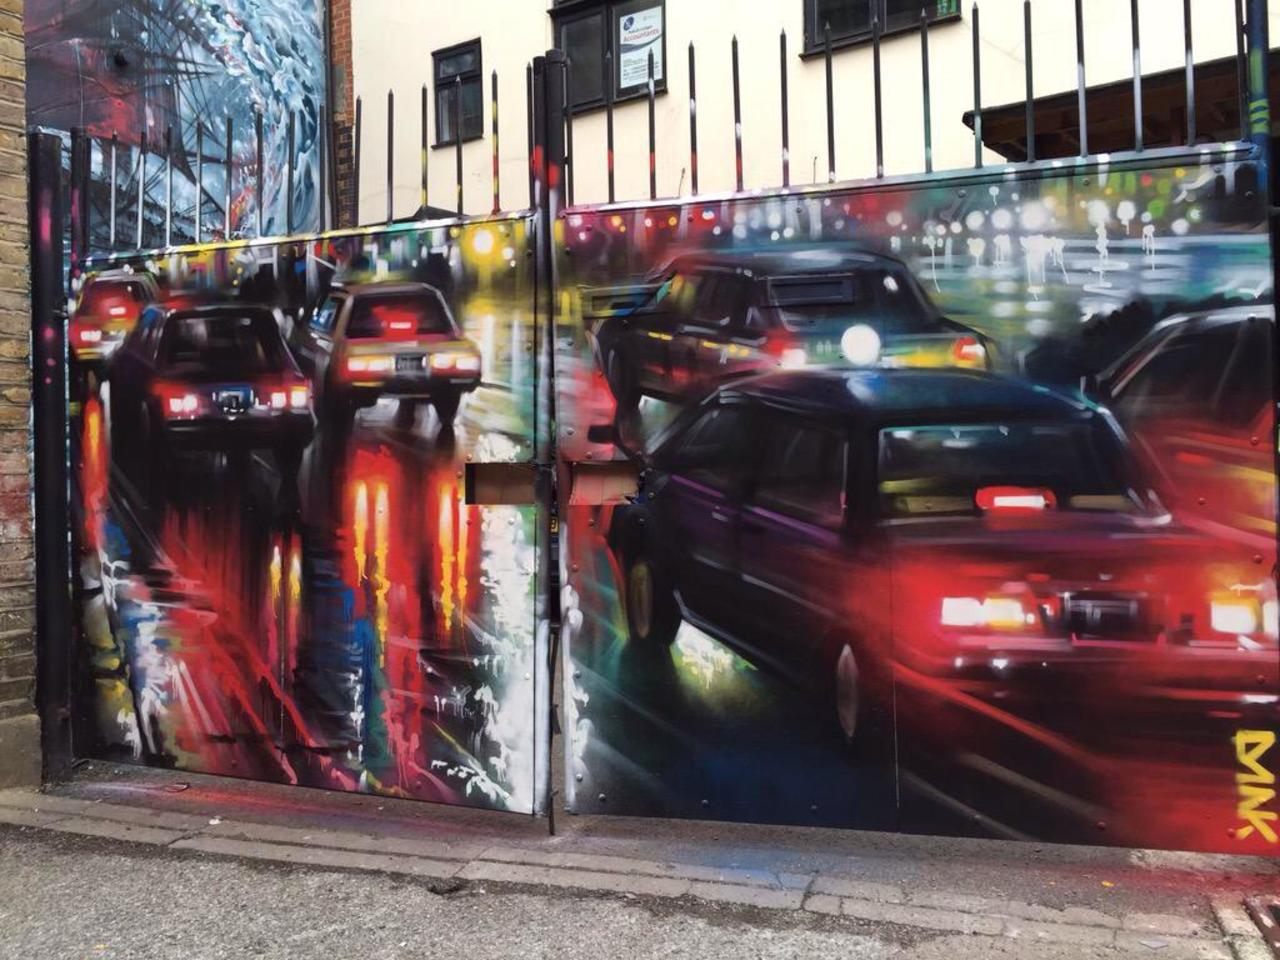 New Street Art by DanKitchener in Brick Lane London 

#art #graffiti #mural #streetart http://t.co/zqOAq5pzOs